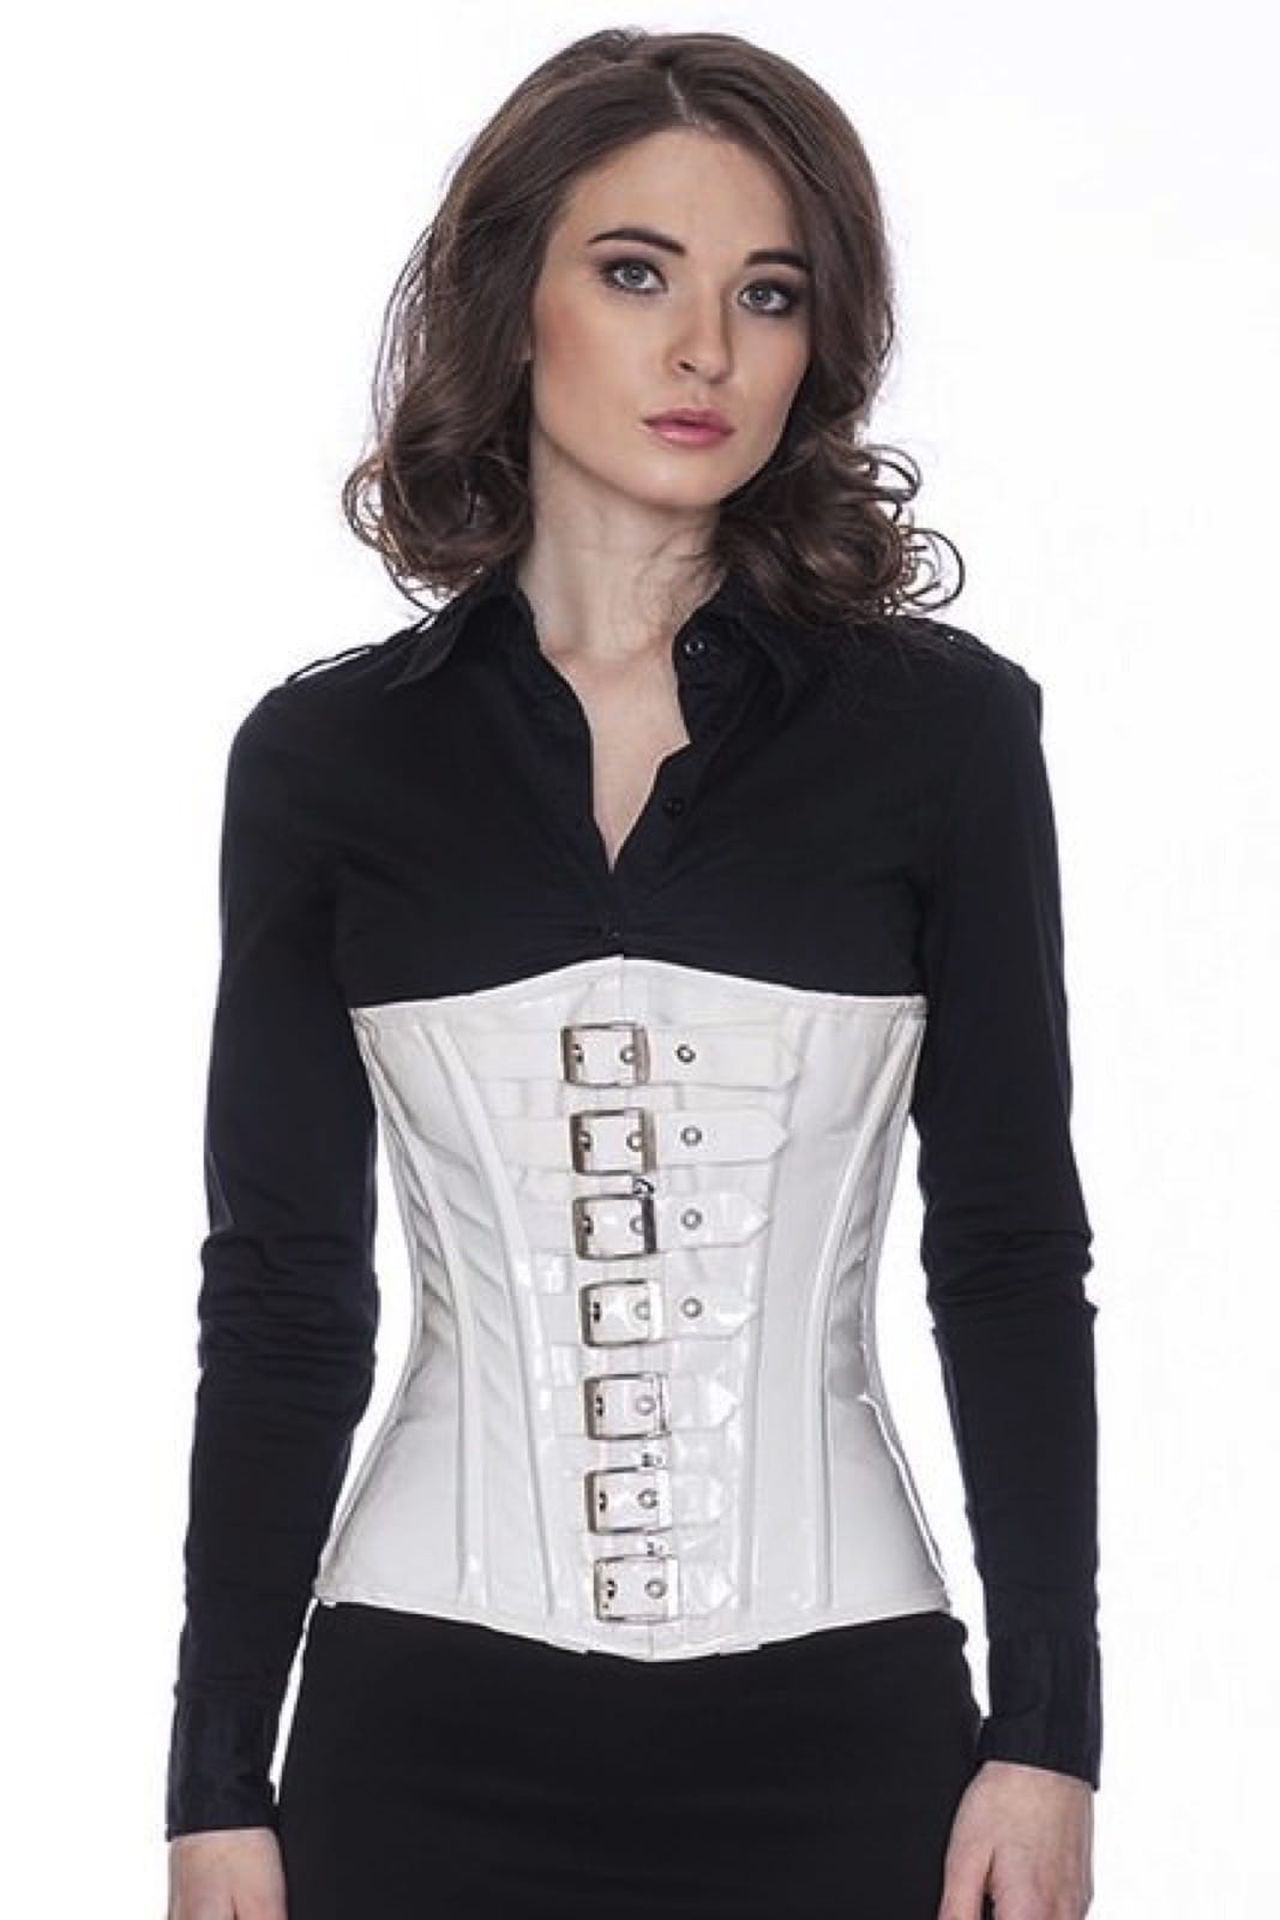 Lak corset wit onderborst met gespen Korset pc76